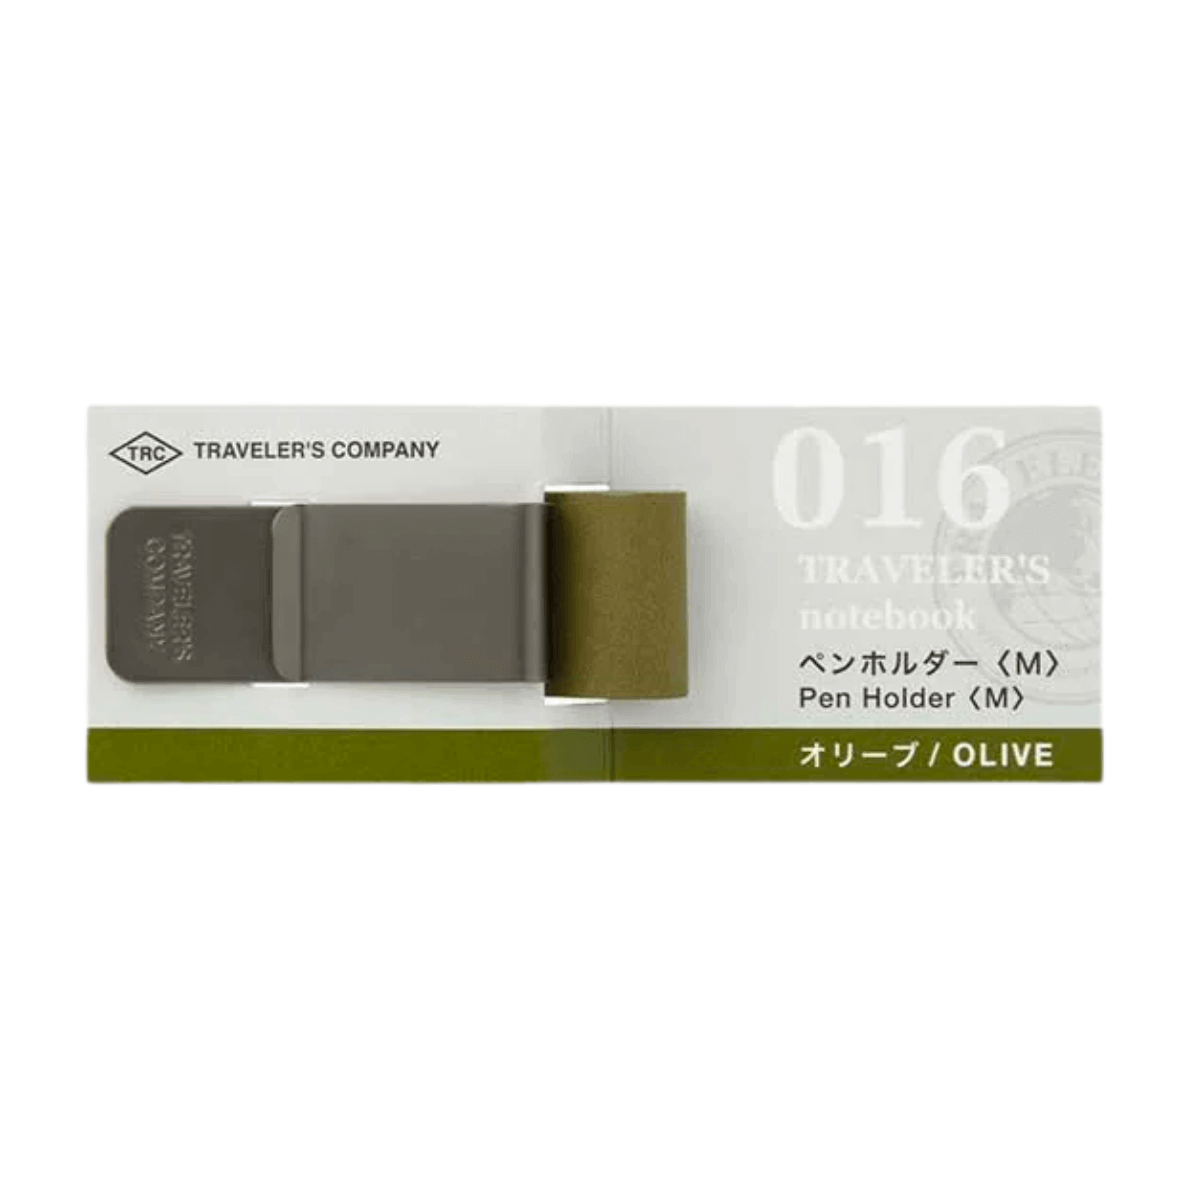 016 Penholder (M) Olive